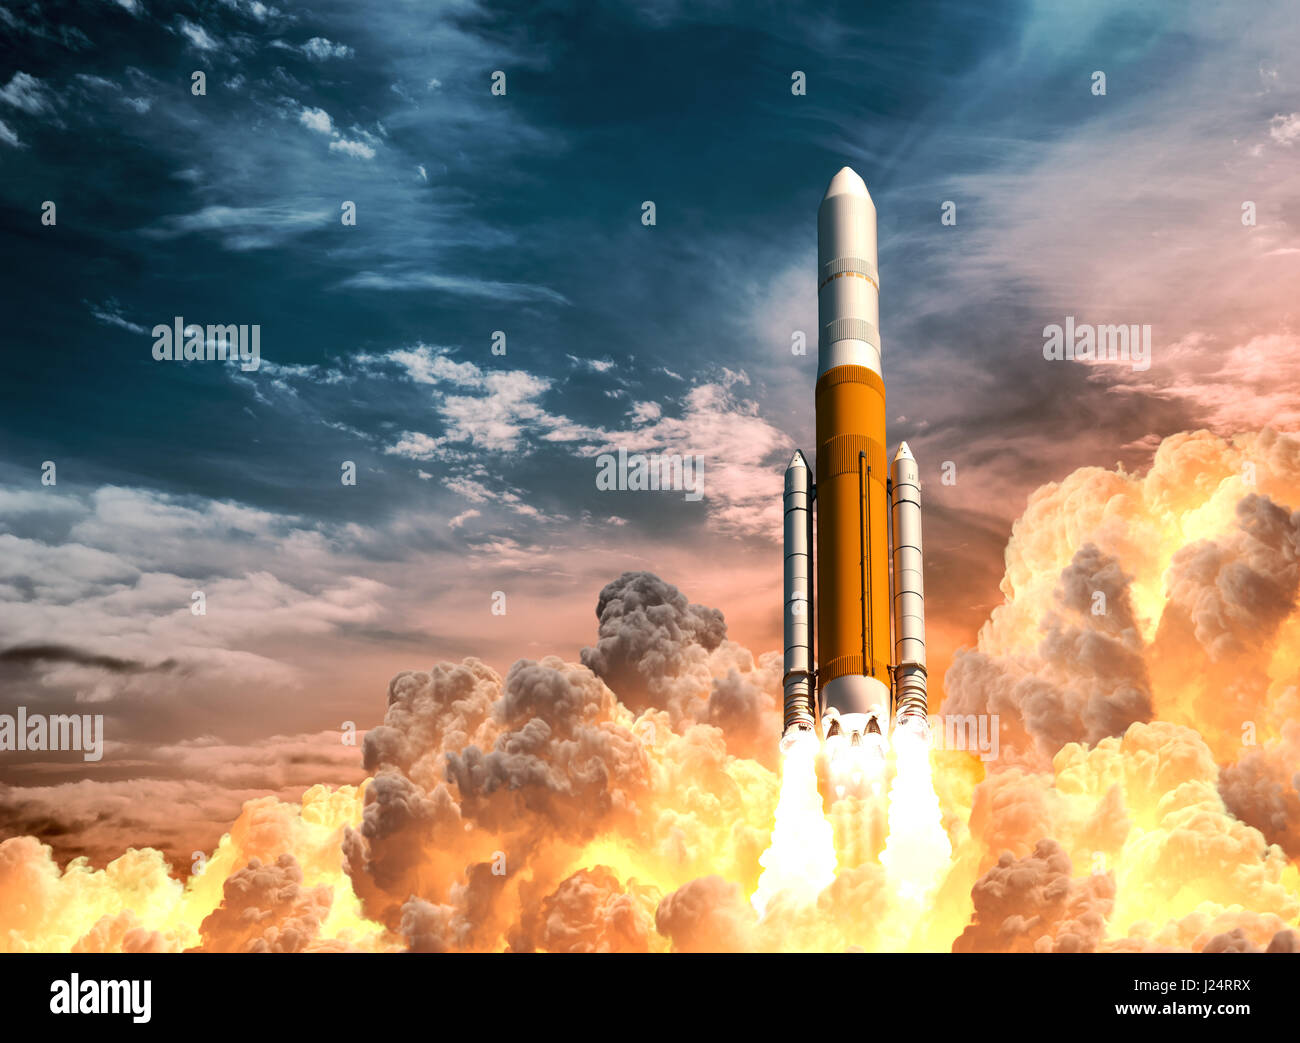 Lanzamiento de Cohetes pesados en el fondo de cielo nublado Foto de stock